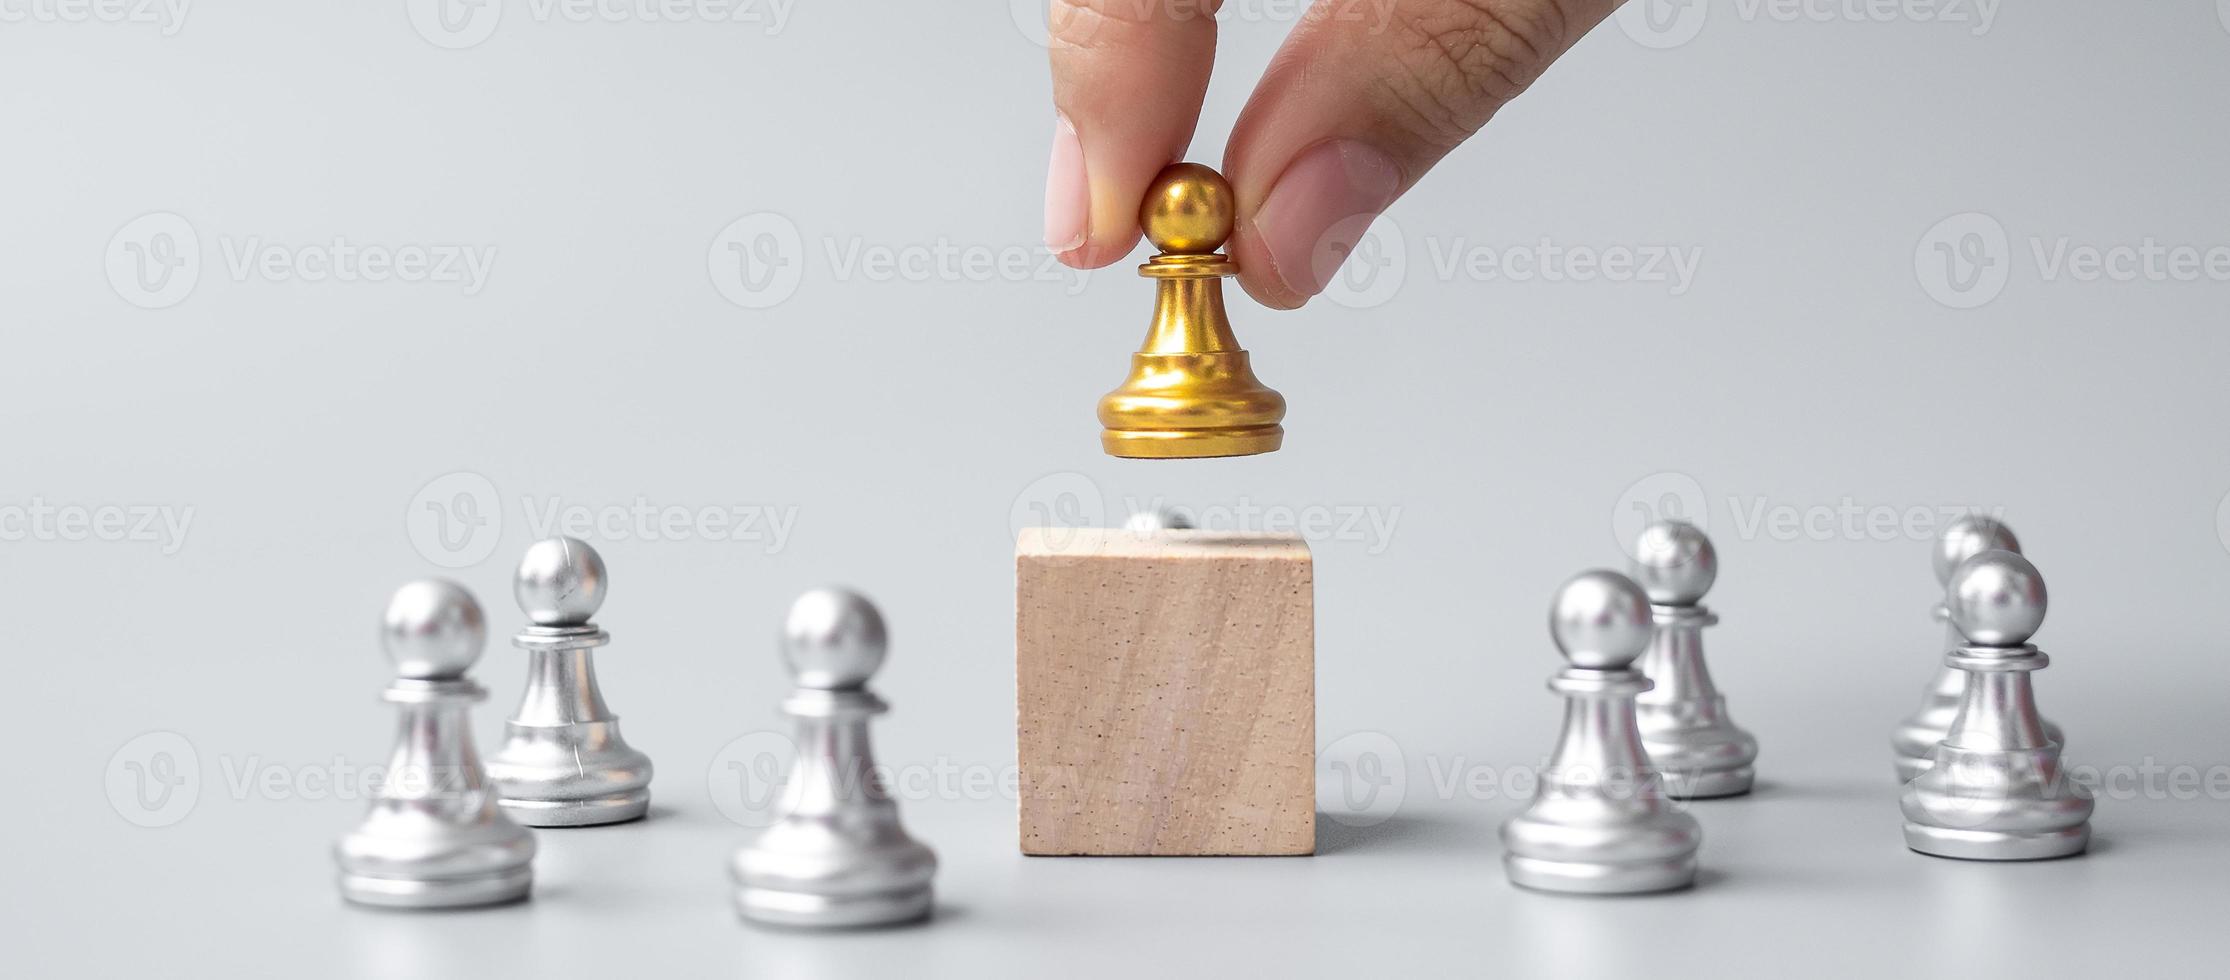 Hand, die goldene Schachfiguren oder Führergeschäftsmann mit silbernen Männern hält. Sieg, Führung, Geschäftserfolg, Team, Recruiting und Teamwork-Konzept foto